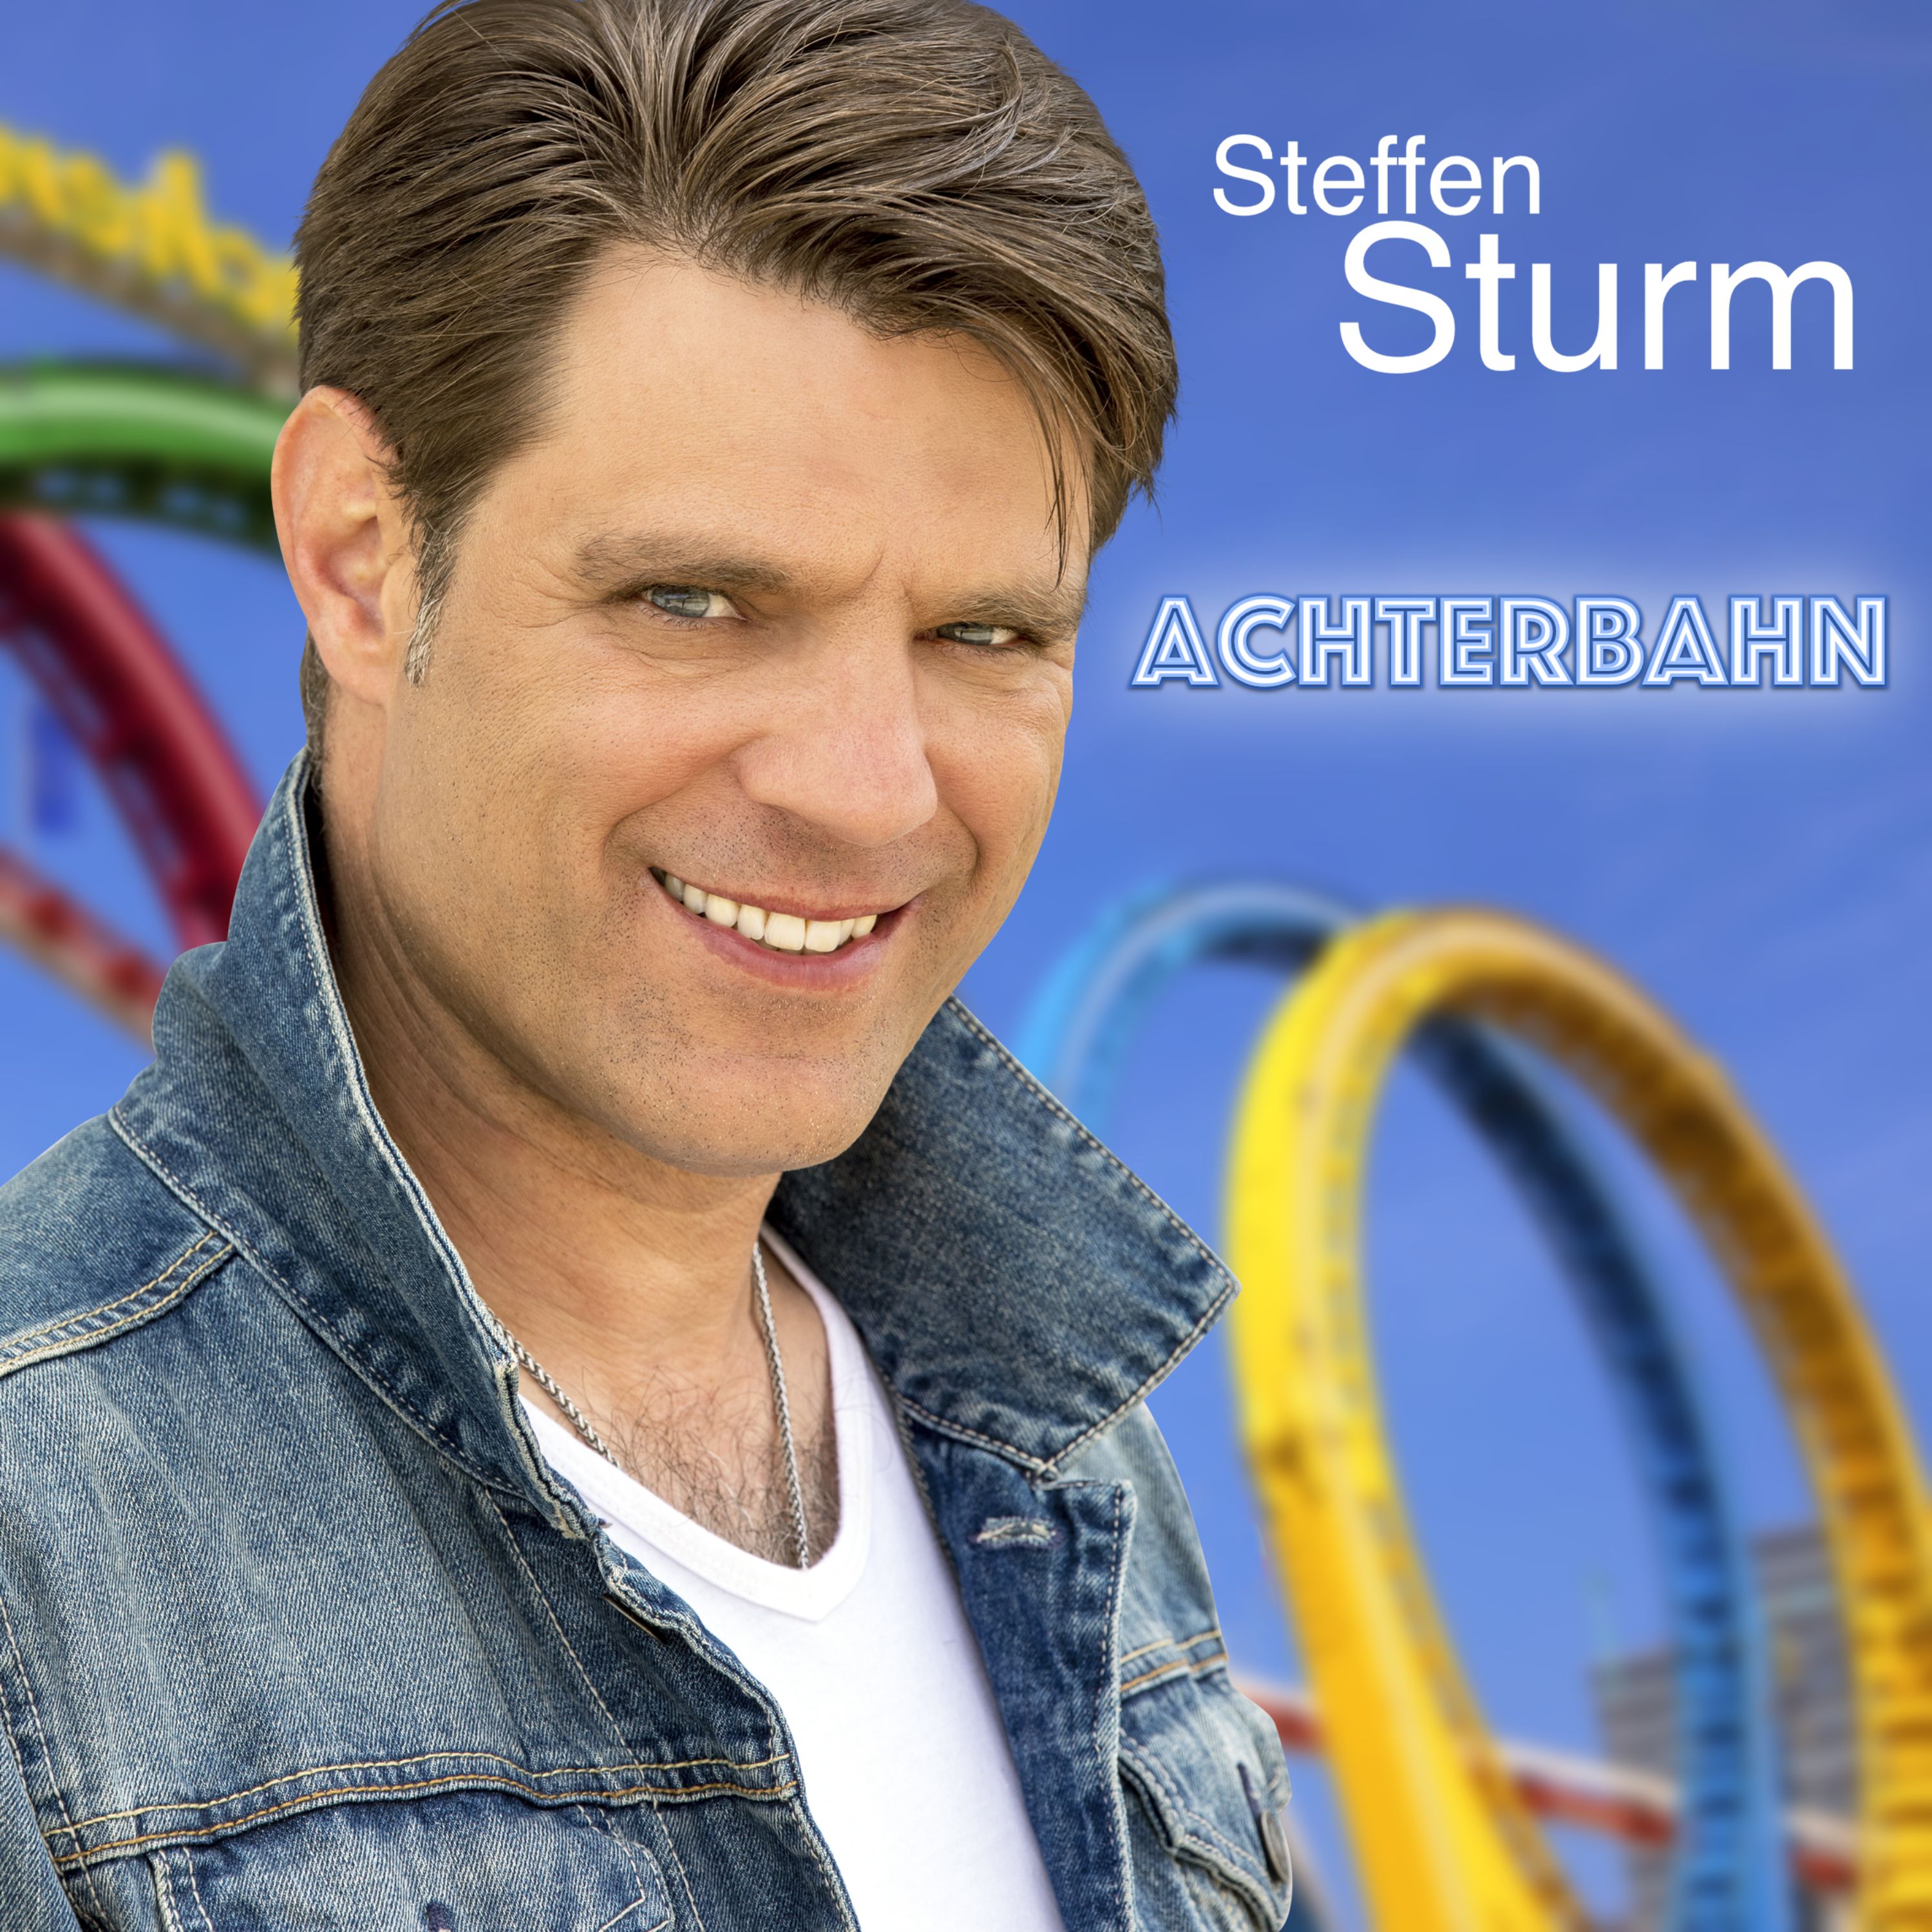 STEFFEN STURM * Achterbahn (Download-Track)